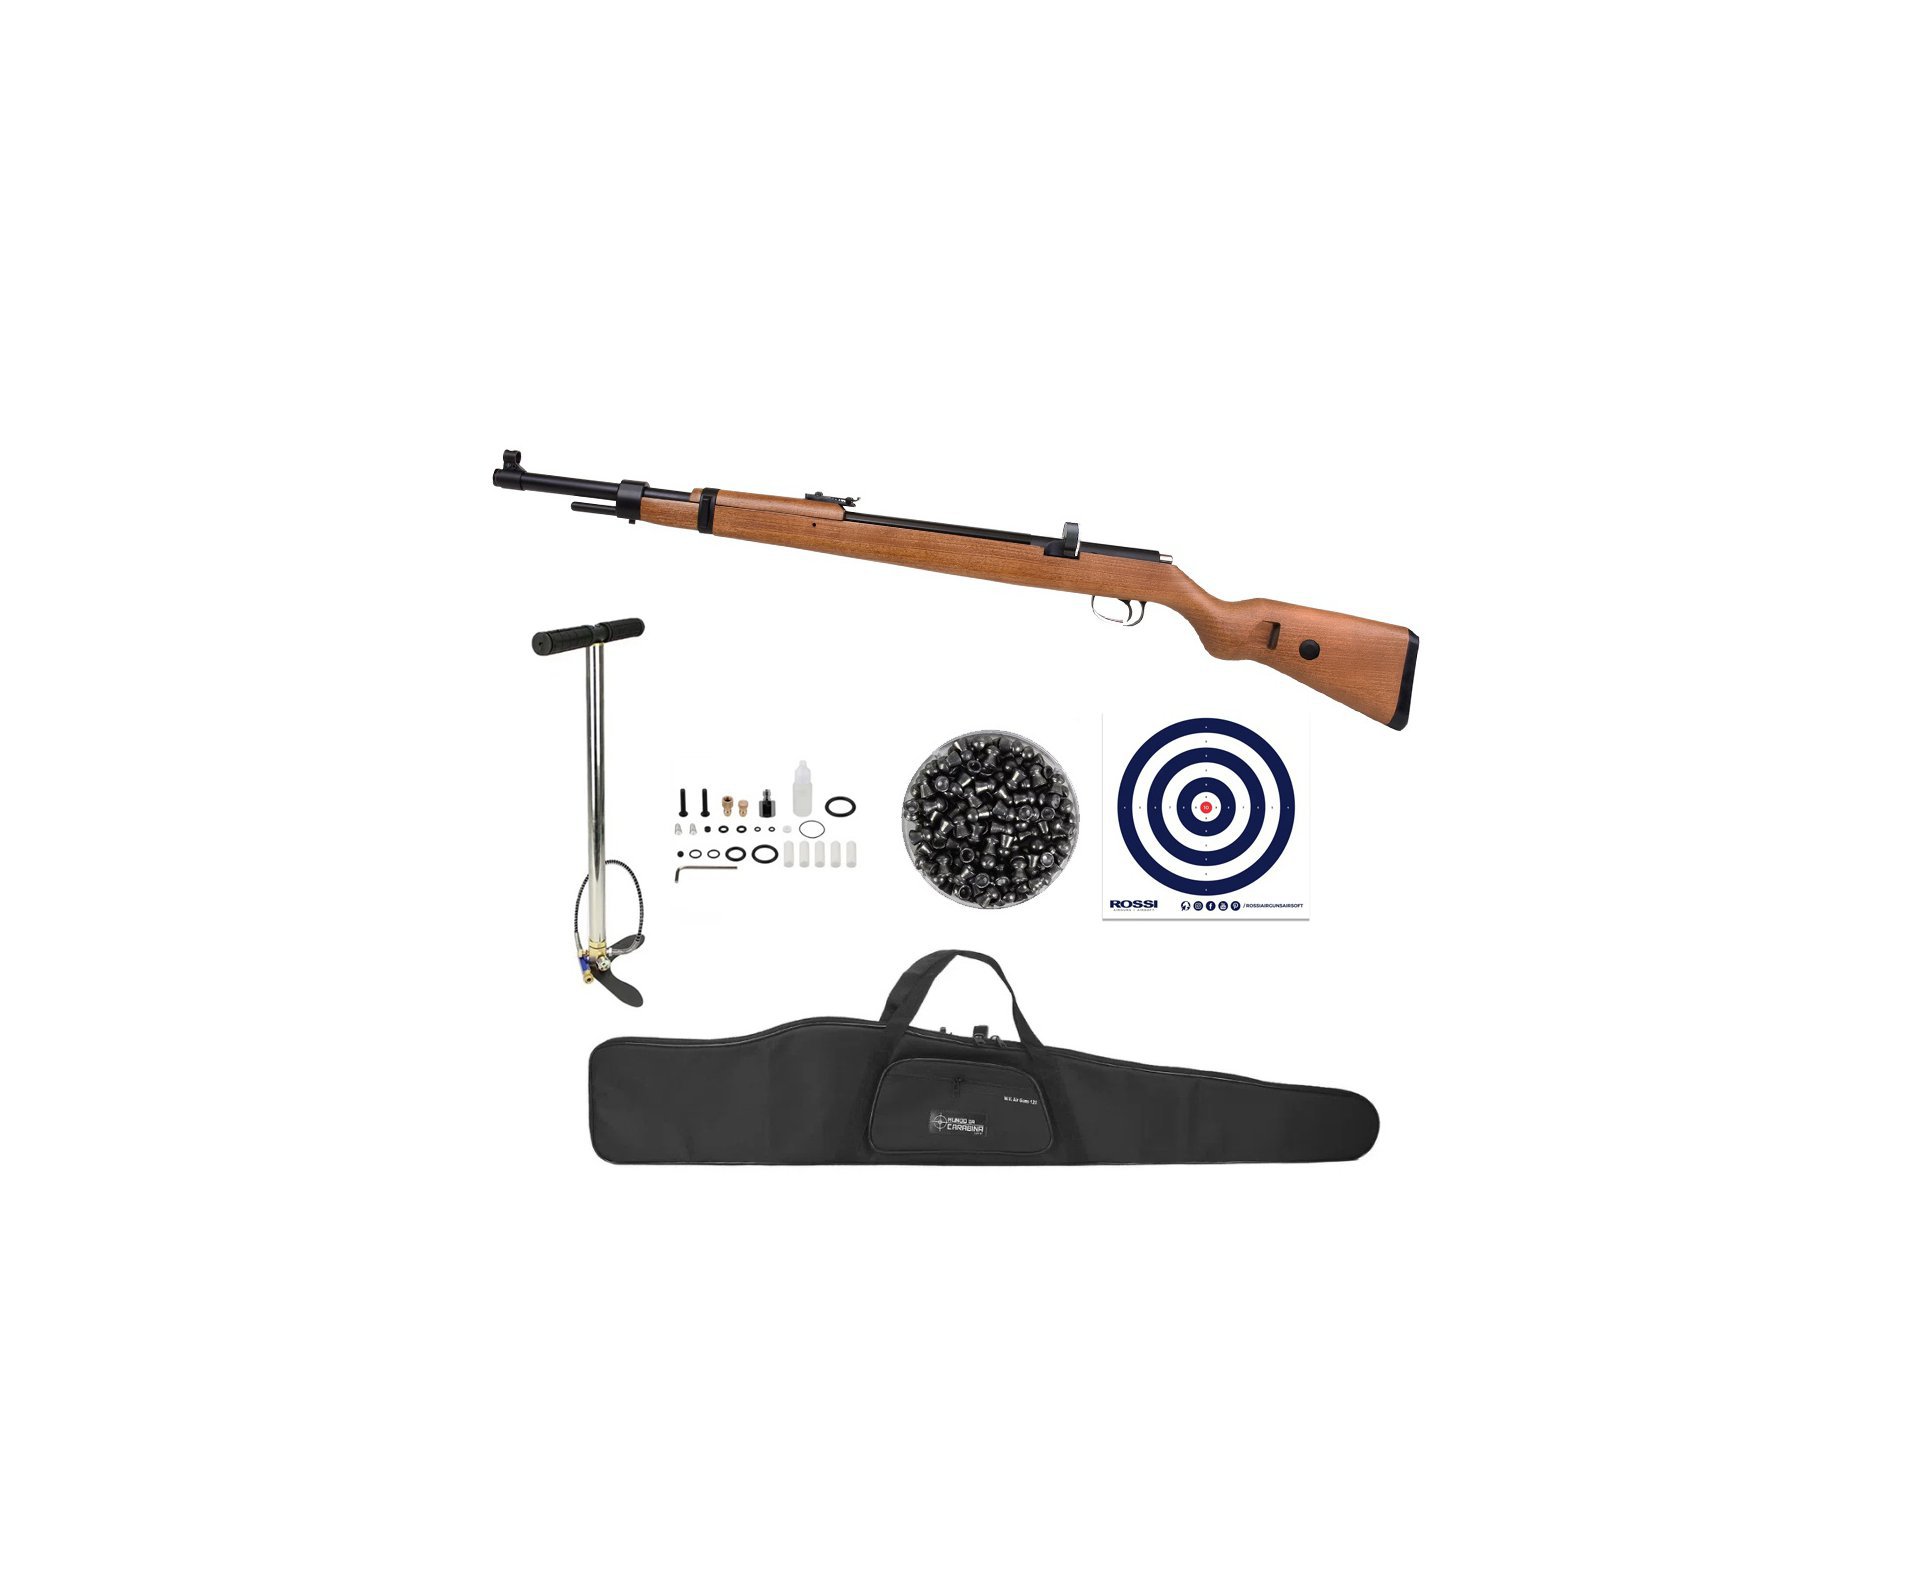 Carabina de Pressão PCP Mauser K98 5.5mm 10 tiros - Diana + Bomba + Capa + Chumbinho + Alvos